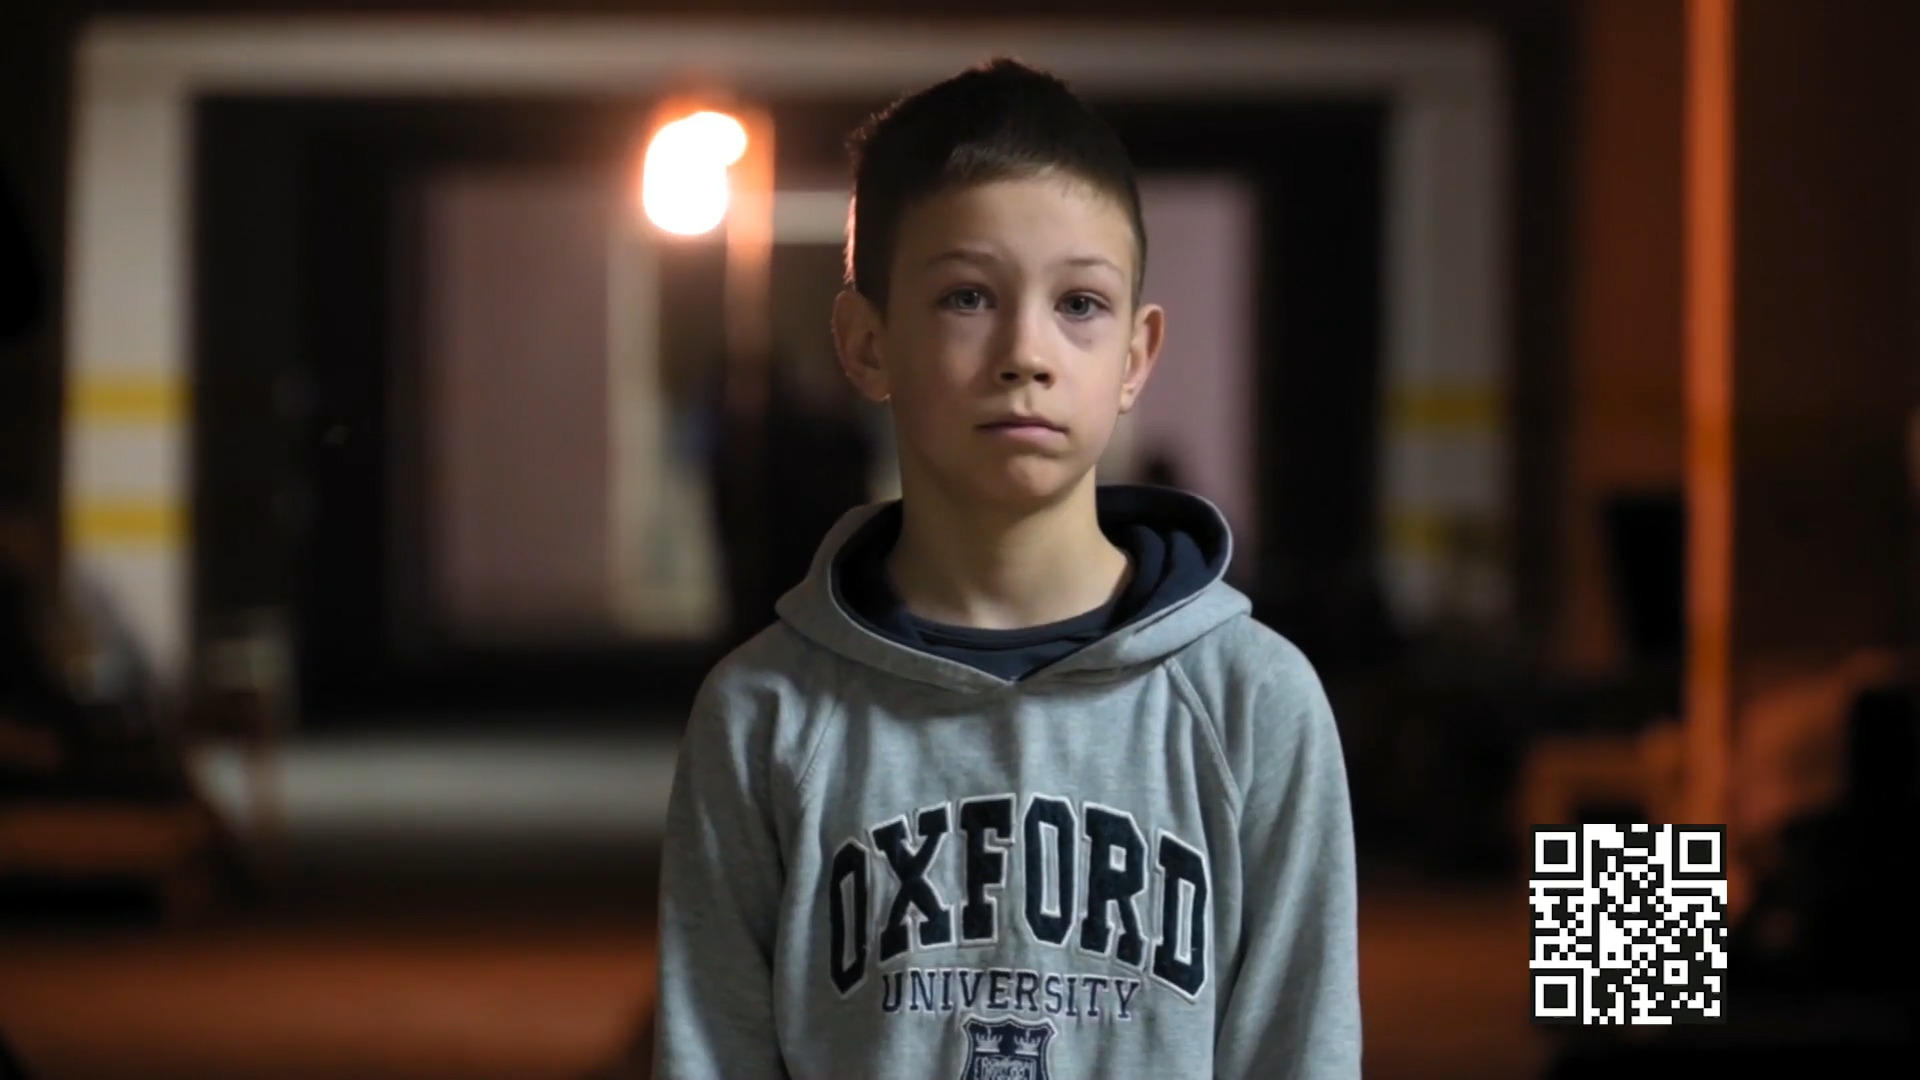 Krieg in der Ukraine: Die Kinder leiden am meisten Bitte helfen Sie weiter!